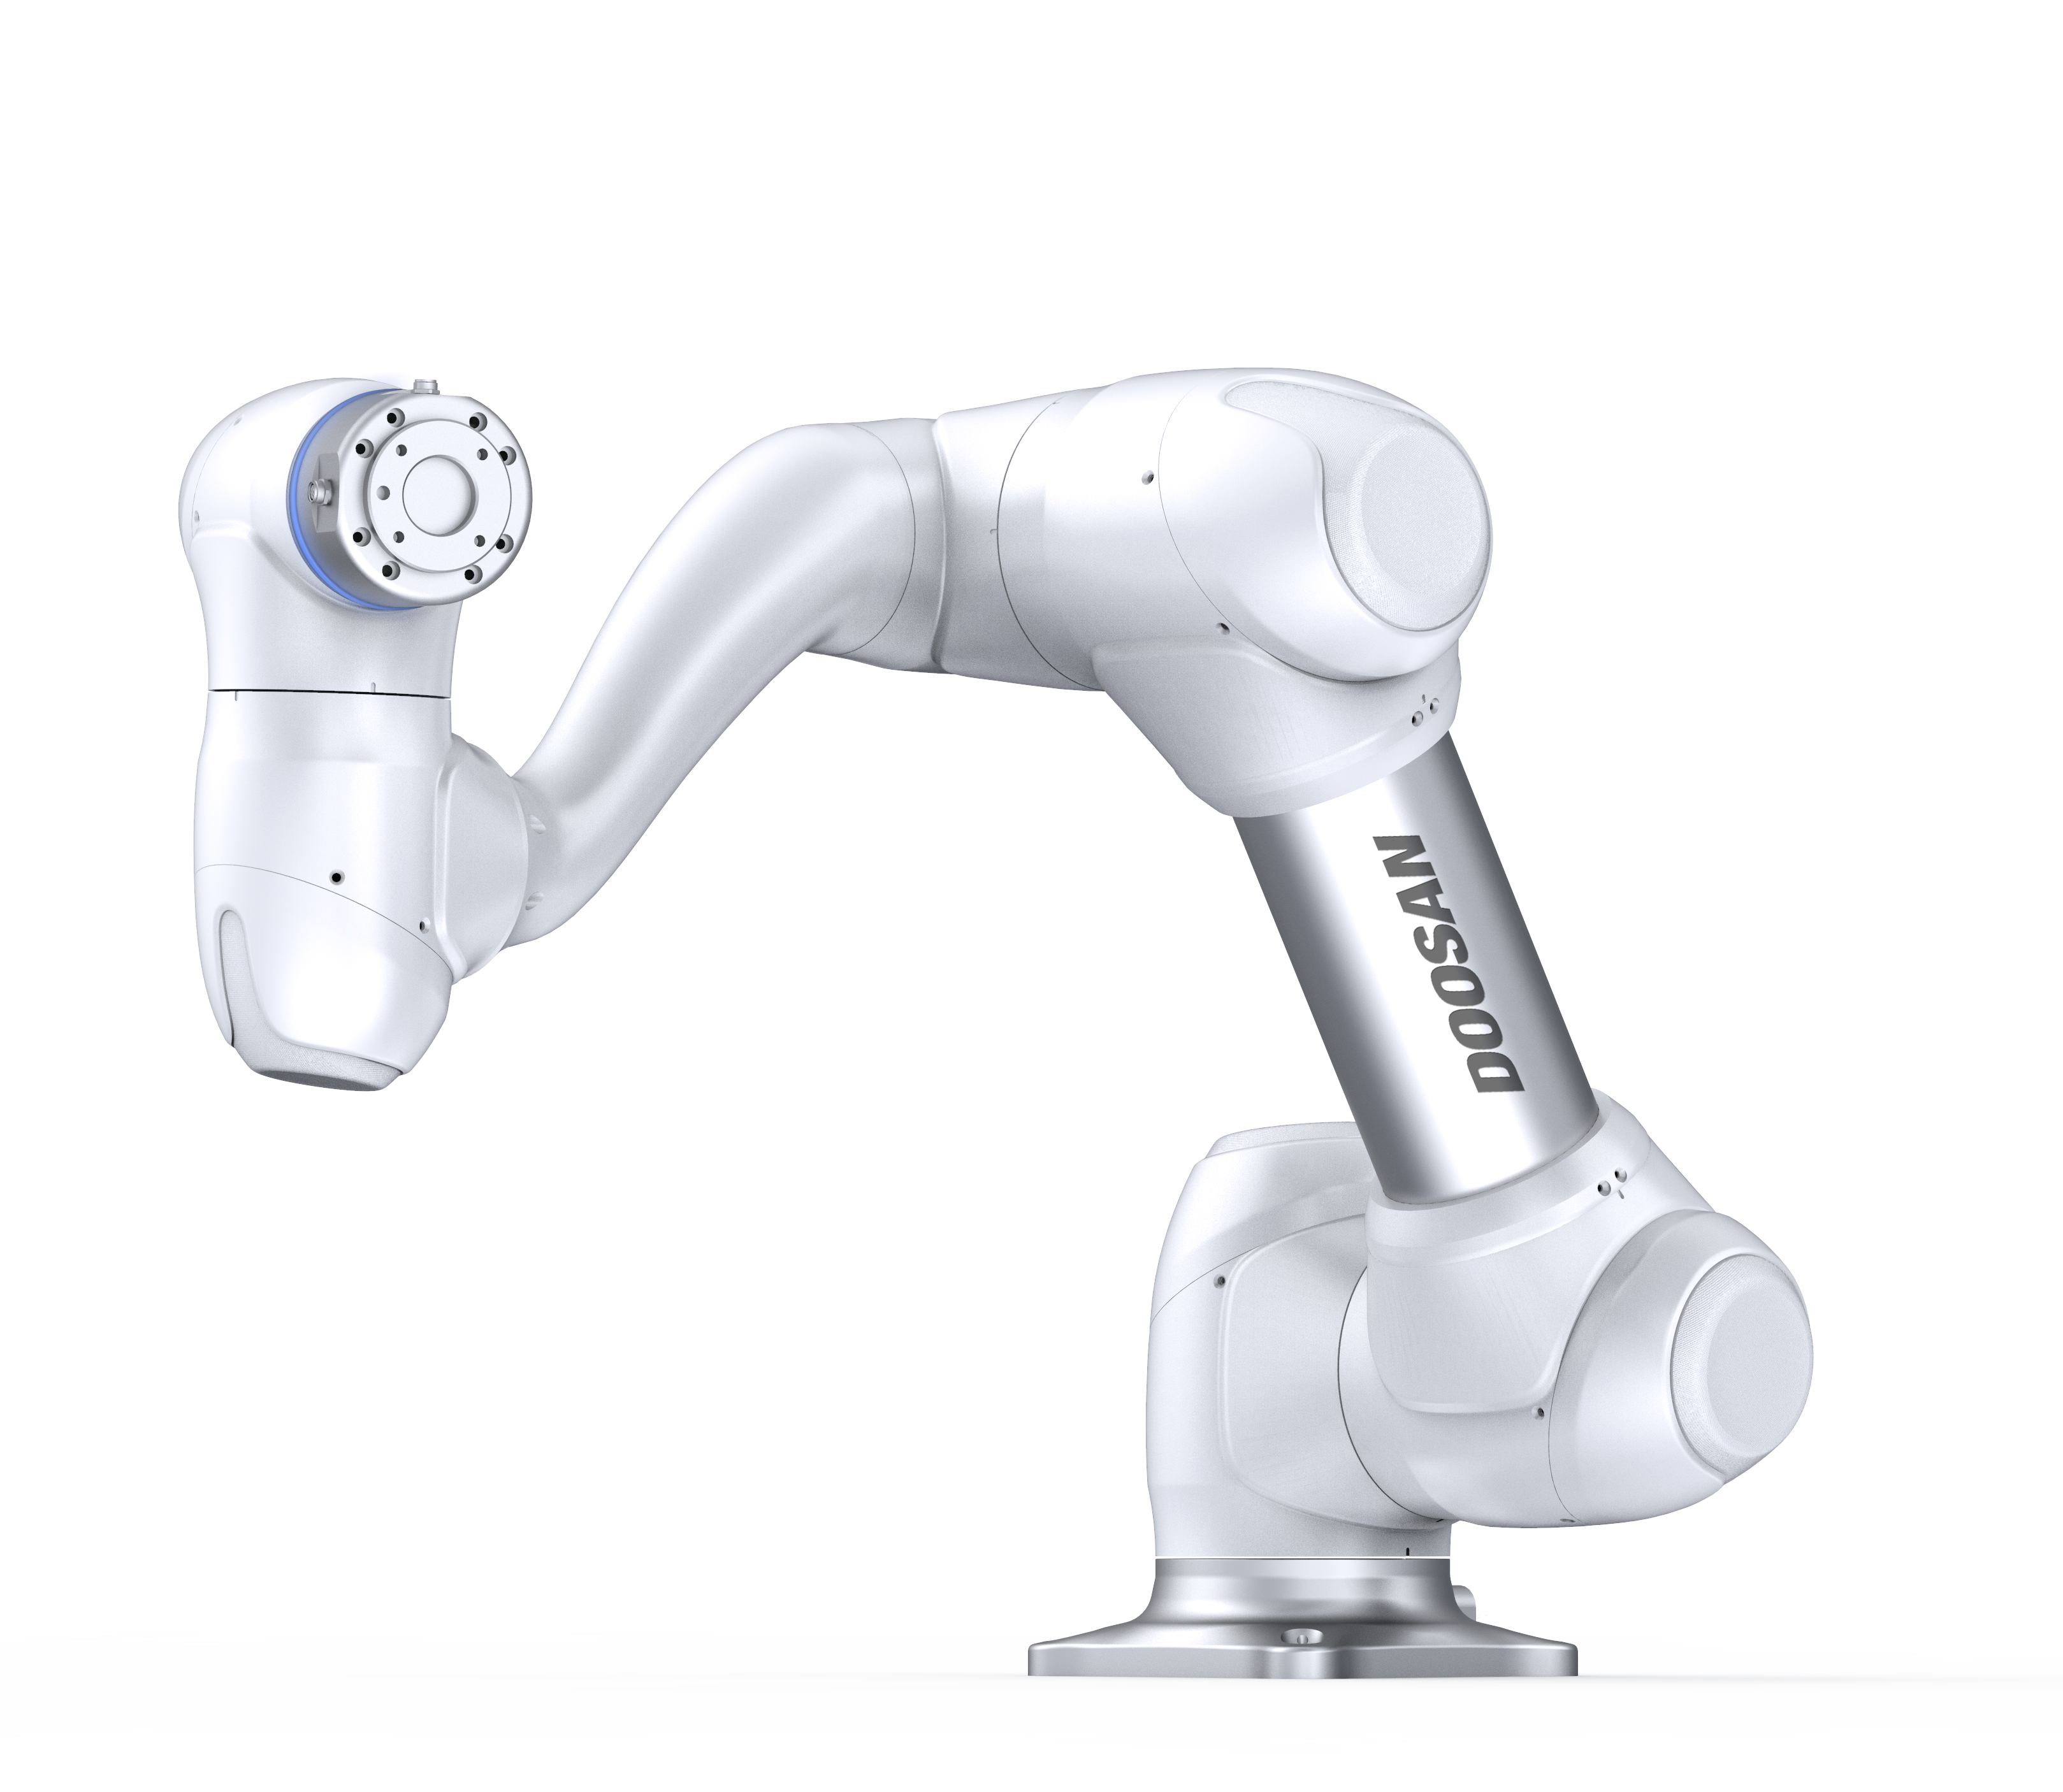 Doosan Roboter M0609 kollaborative Roboter mit 6 Drehmomentsensoren für echte MRK Mensch-Roboter-Kollaboration, Front Ansicht, Cobot-Schleif-Applikation